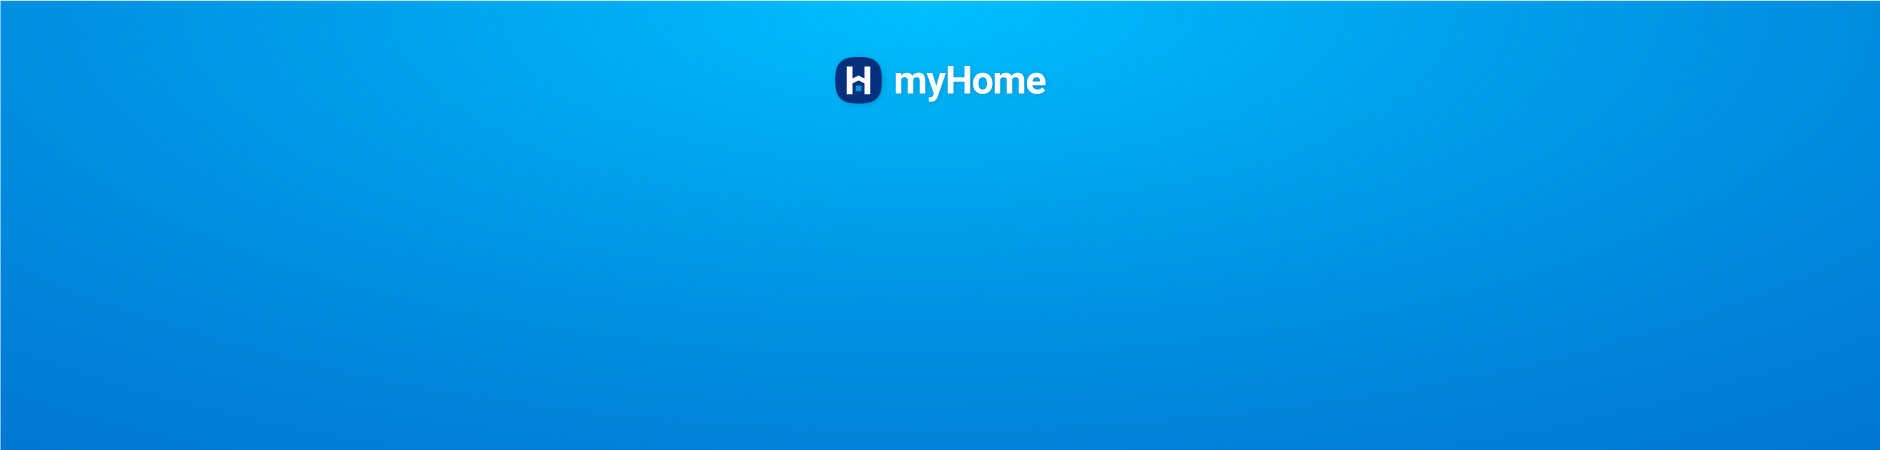 Cập nhật tính năng myHome mới: Đề xuất giá giao dịch, tỷ suất sinh lời